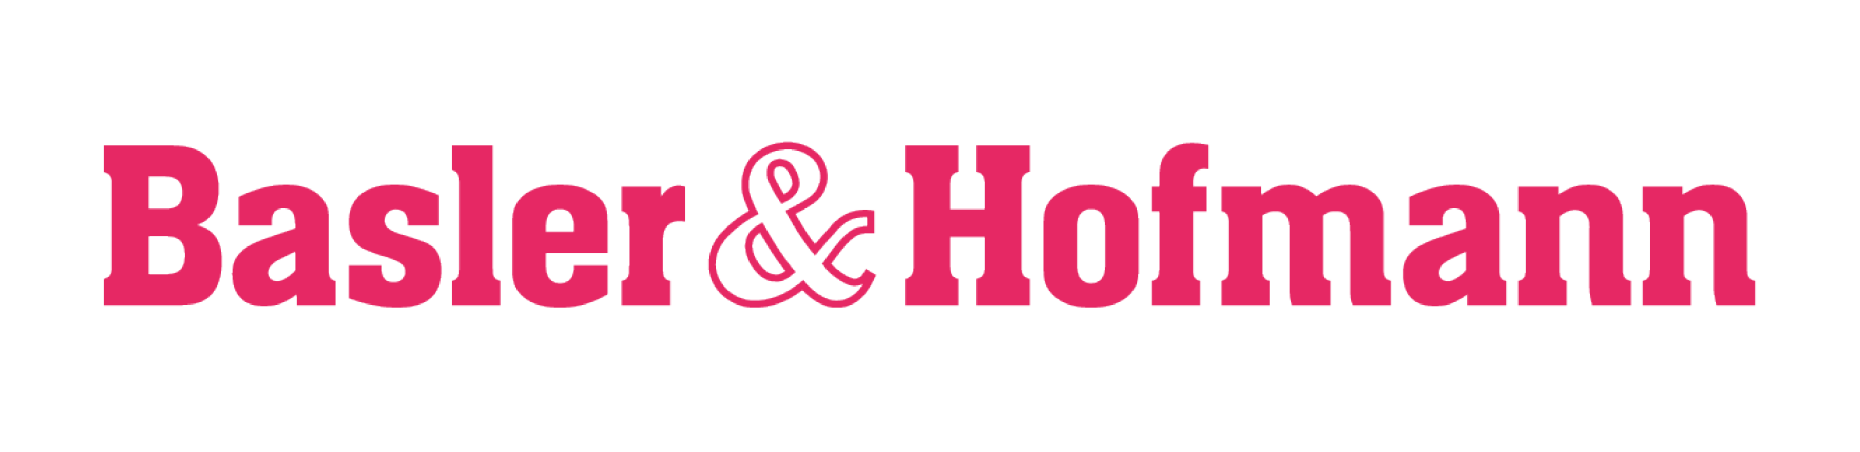 Basler&Hofmann-logo